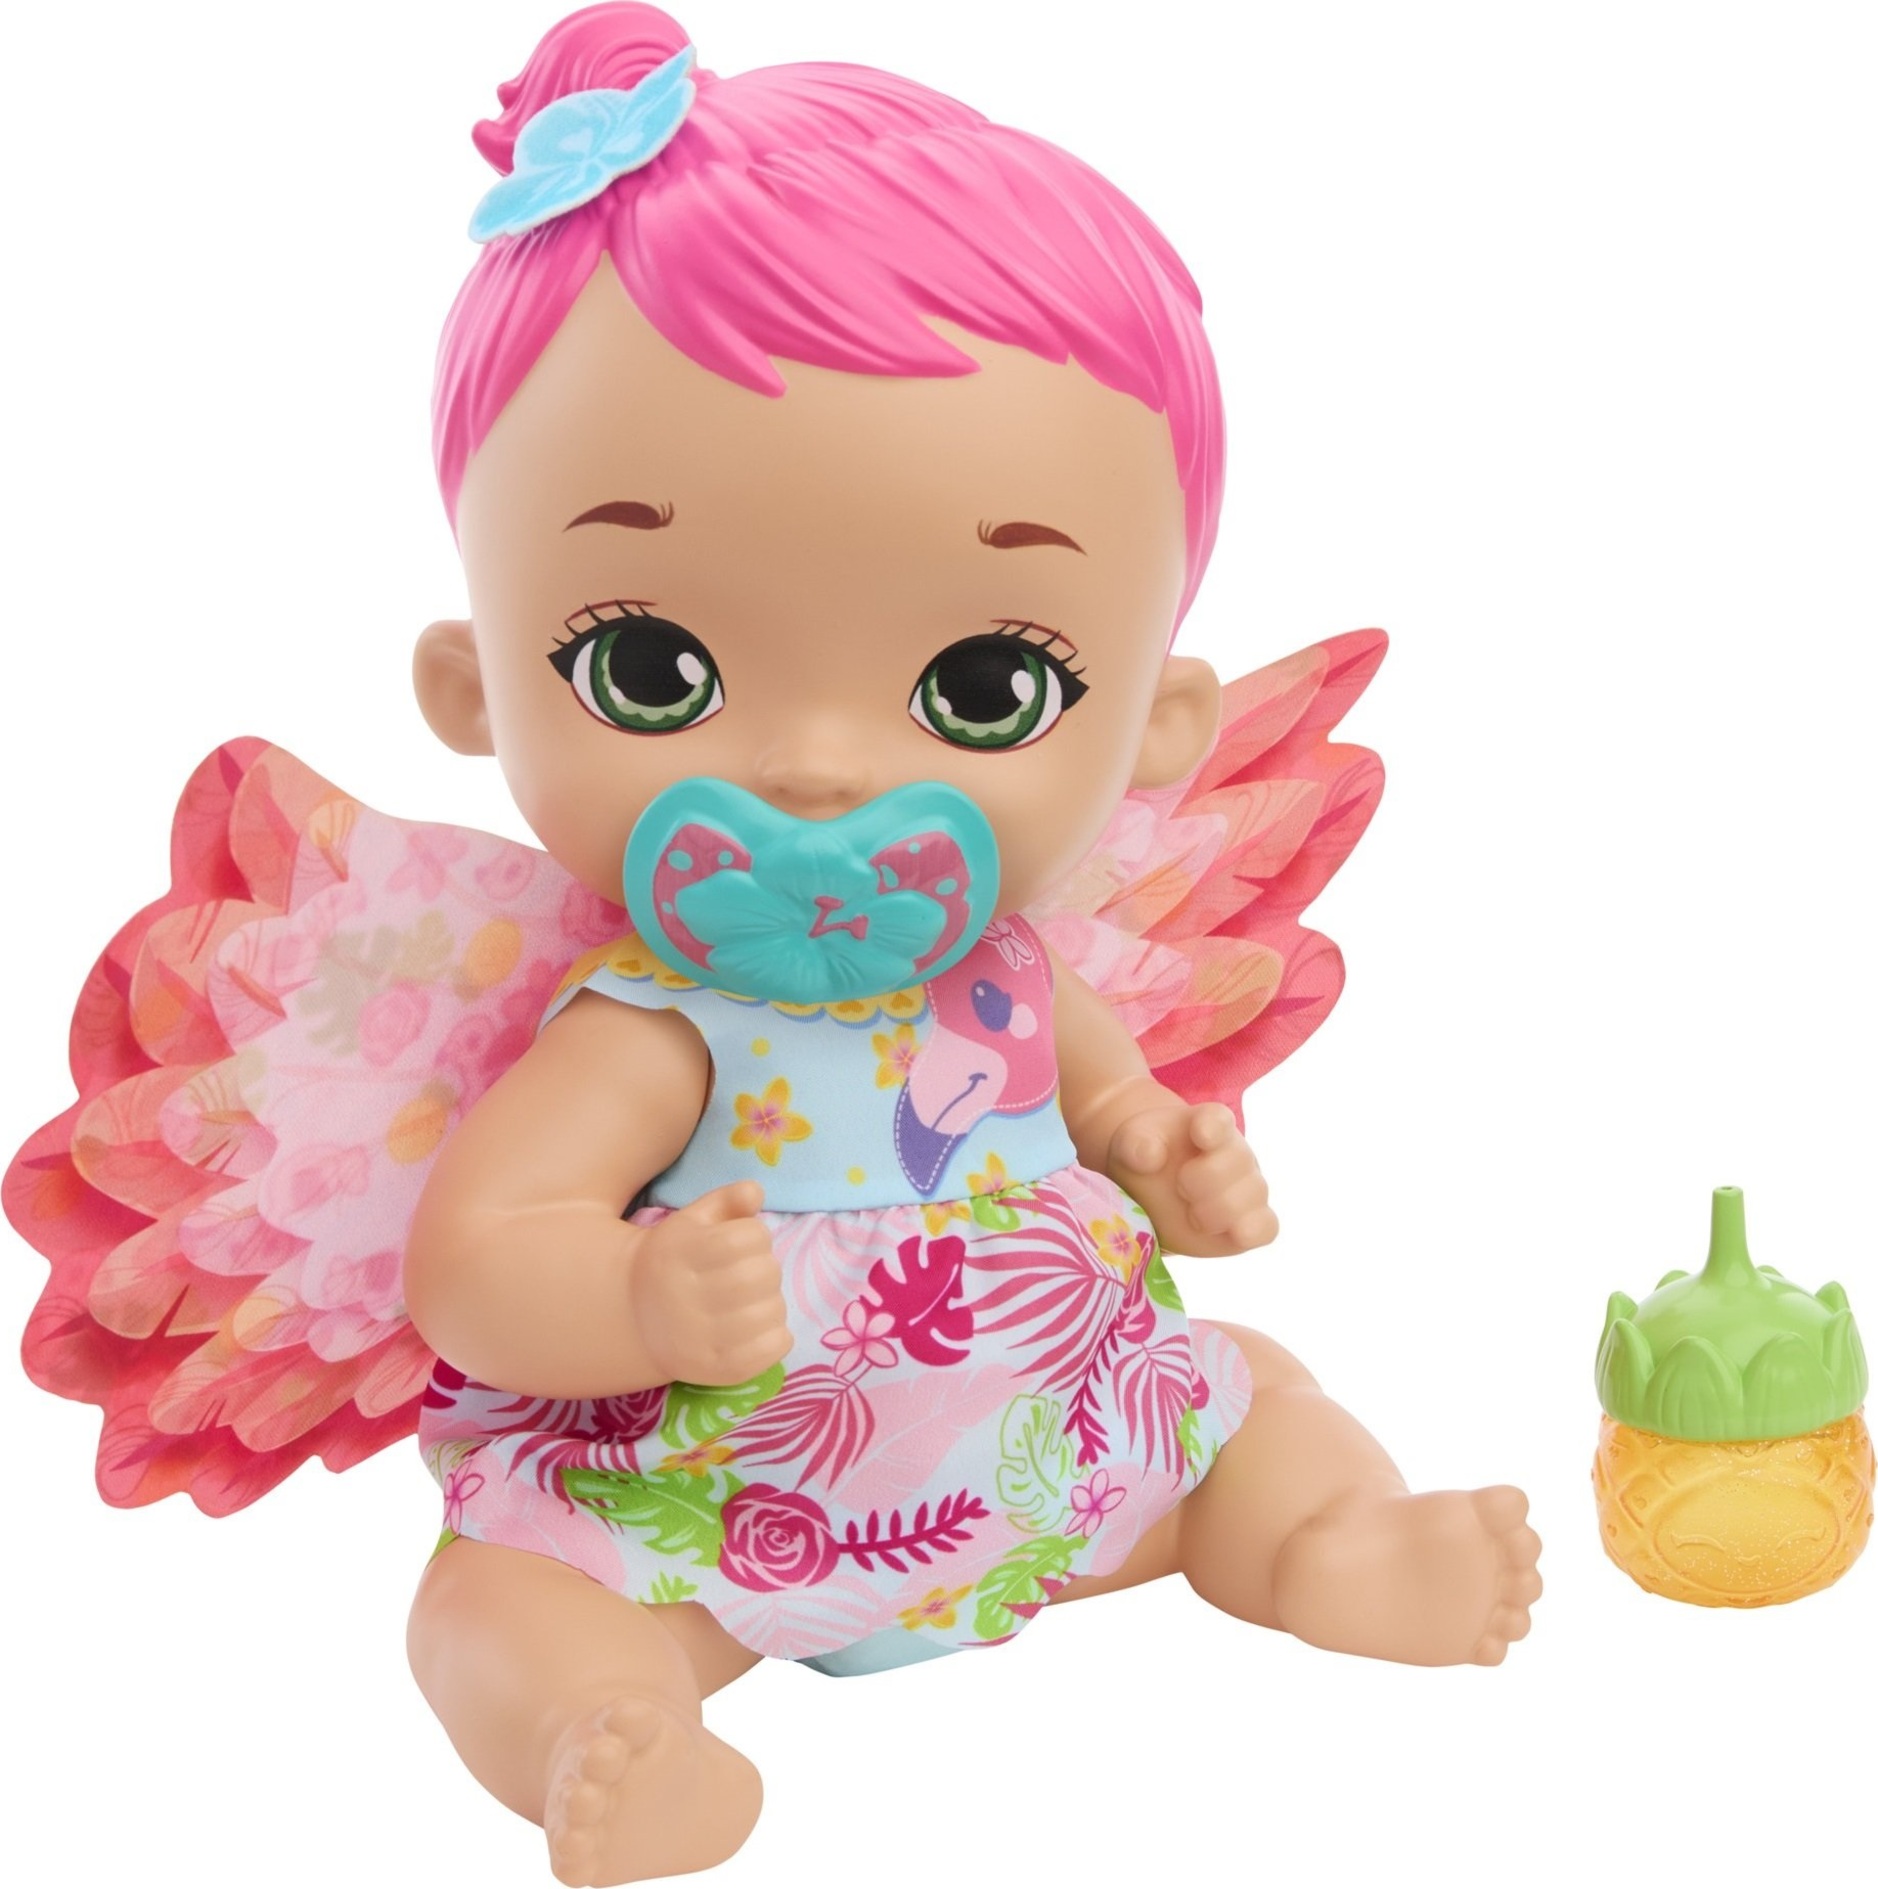 Mattel My Garden Baby Miminko - plameňák s růžovými vlasy